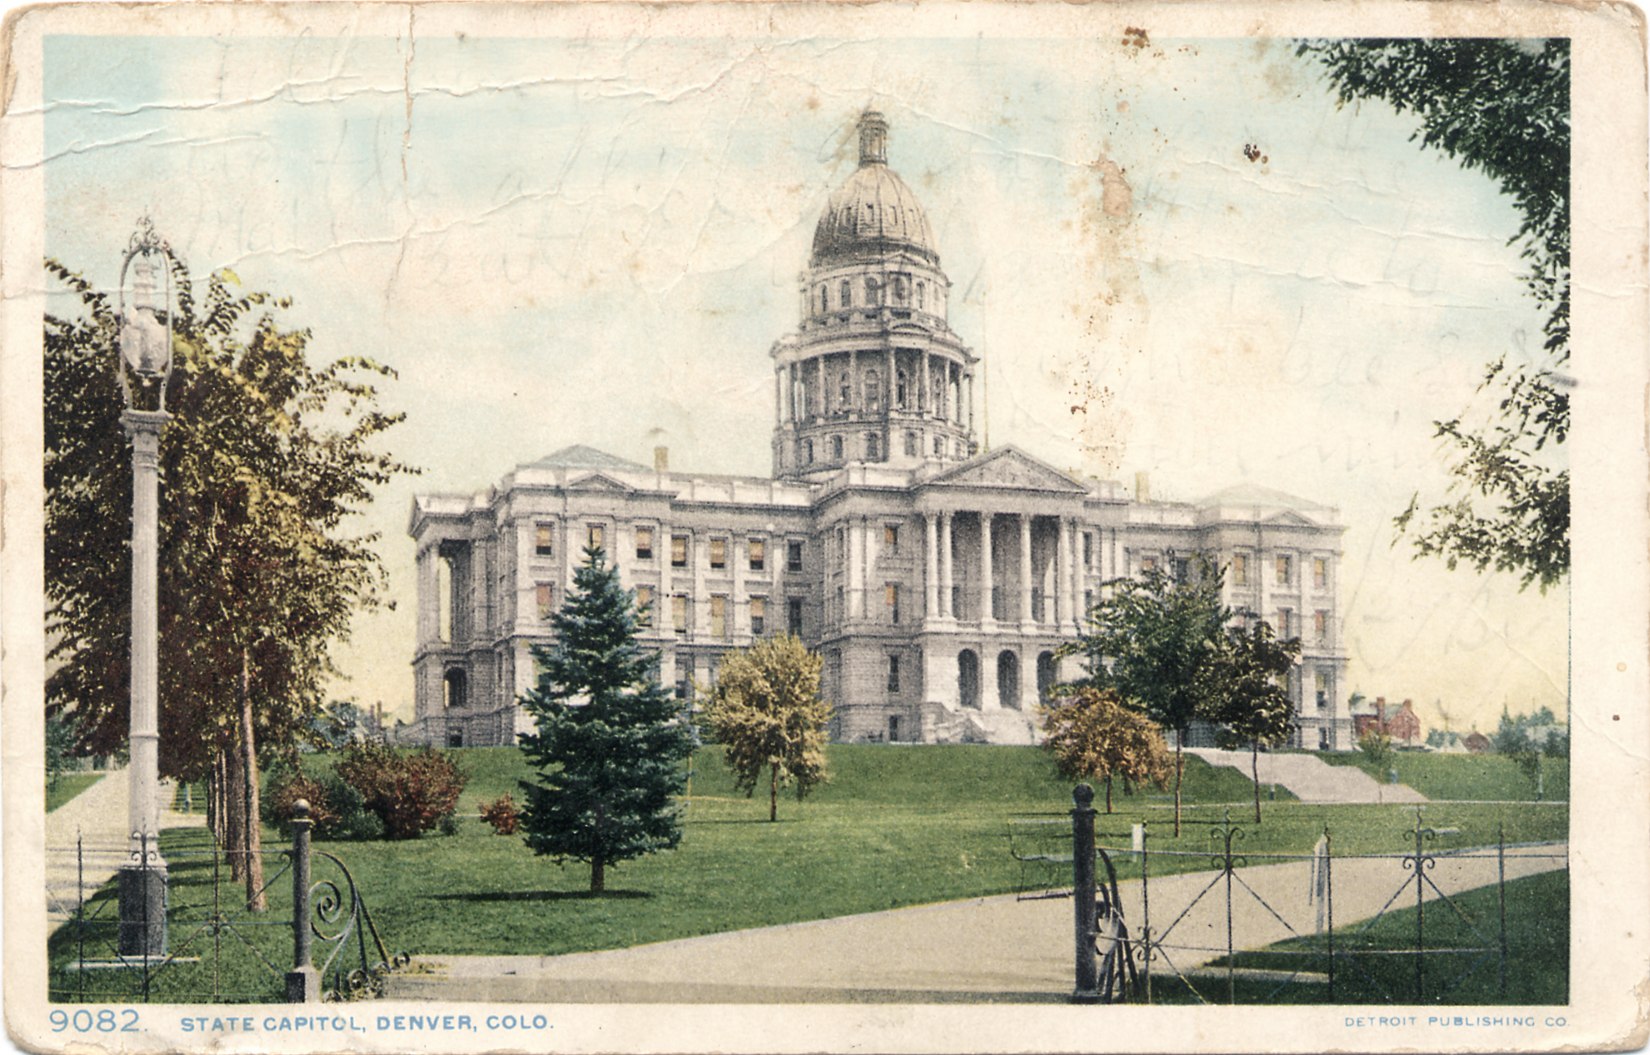 State Capitol, Denver, Colo.